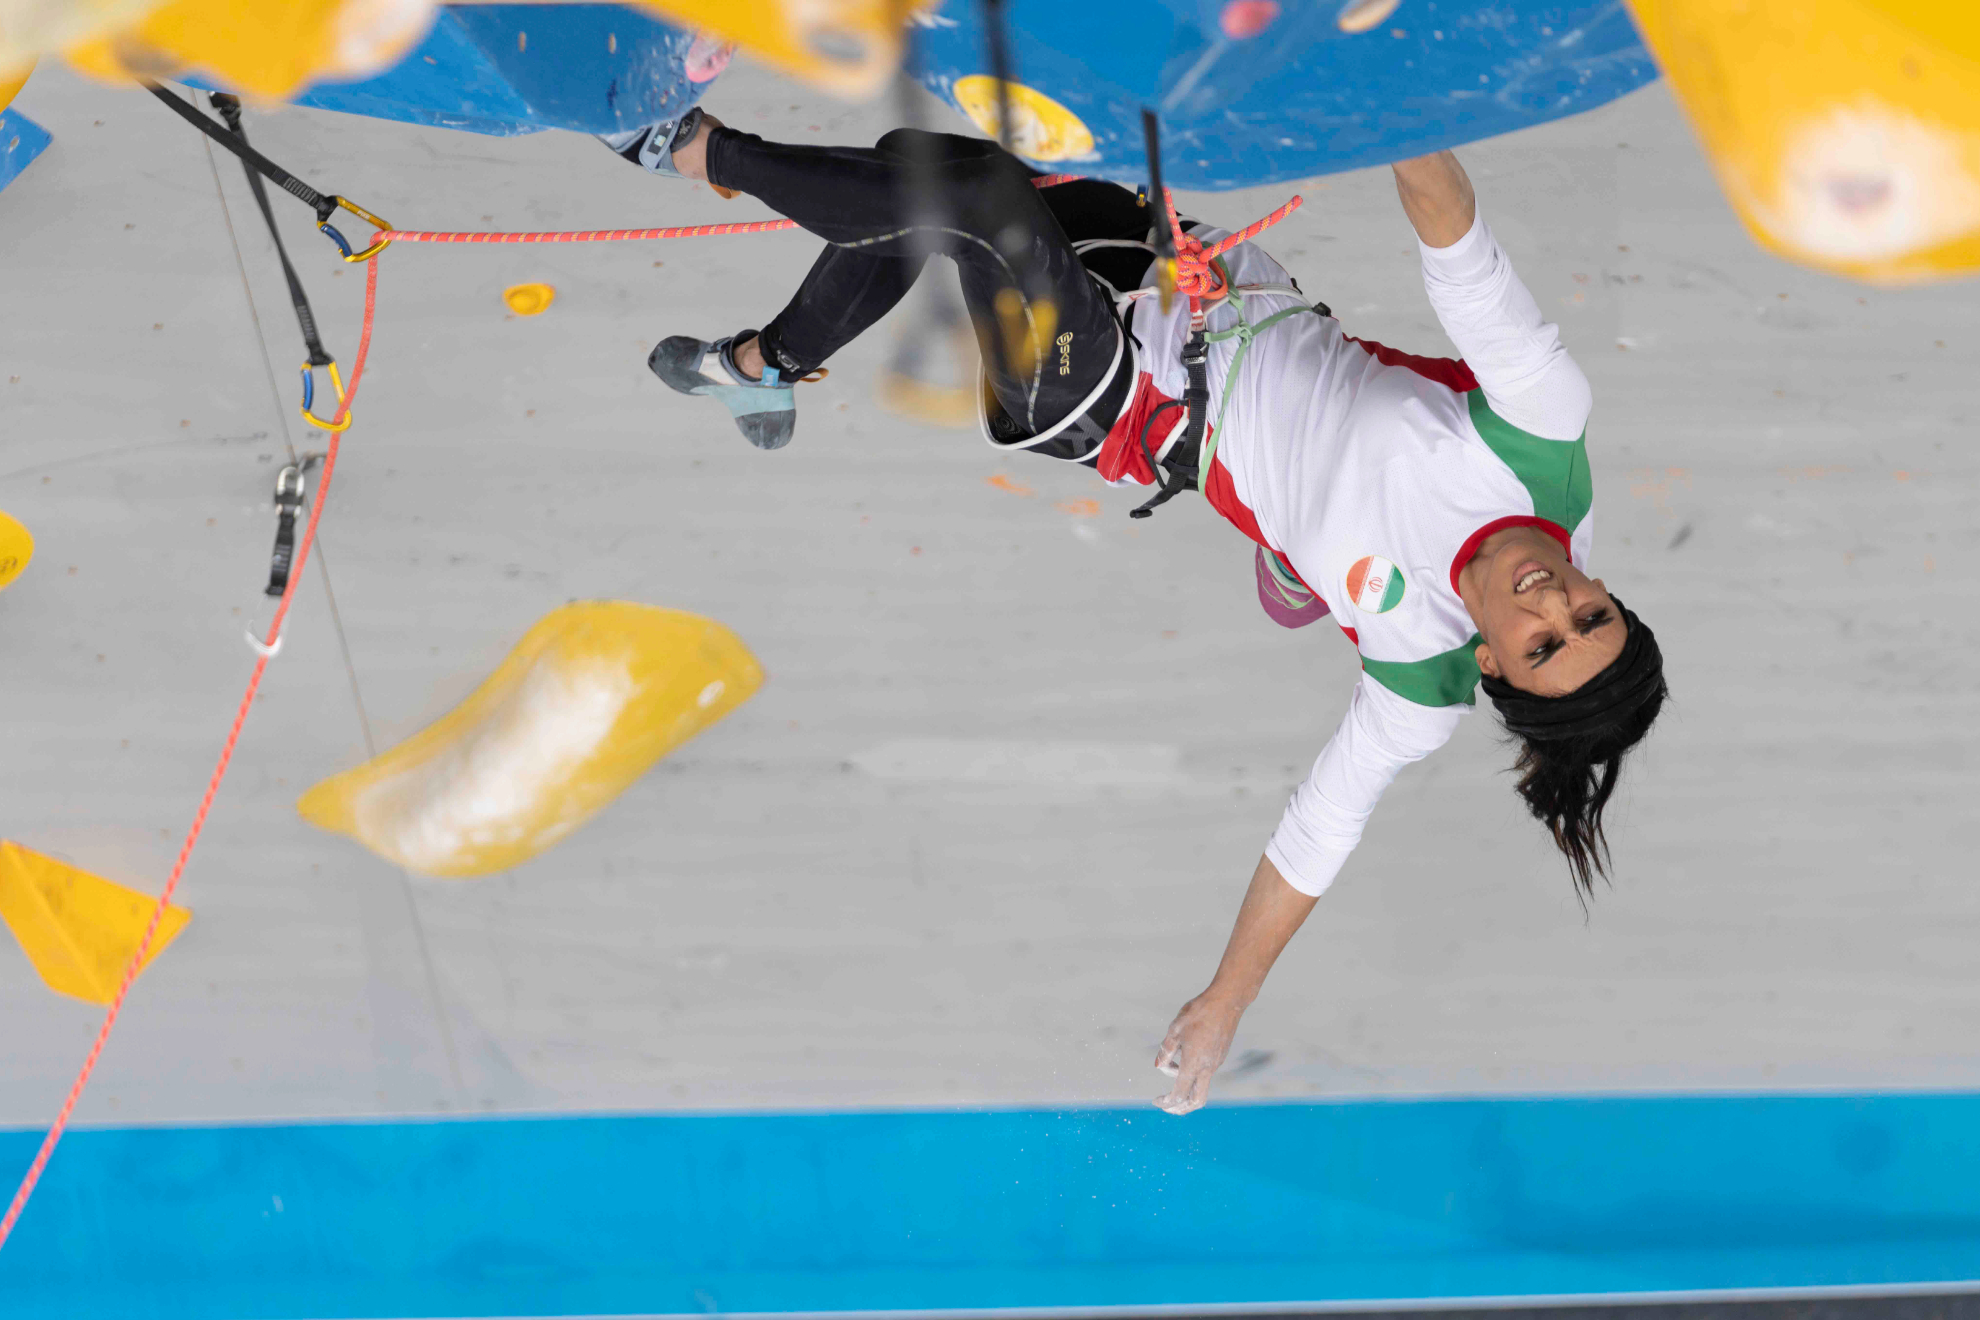 La atleta iraní compitió sin el hiyab en Corea del Sur | AP